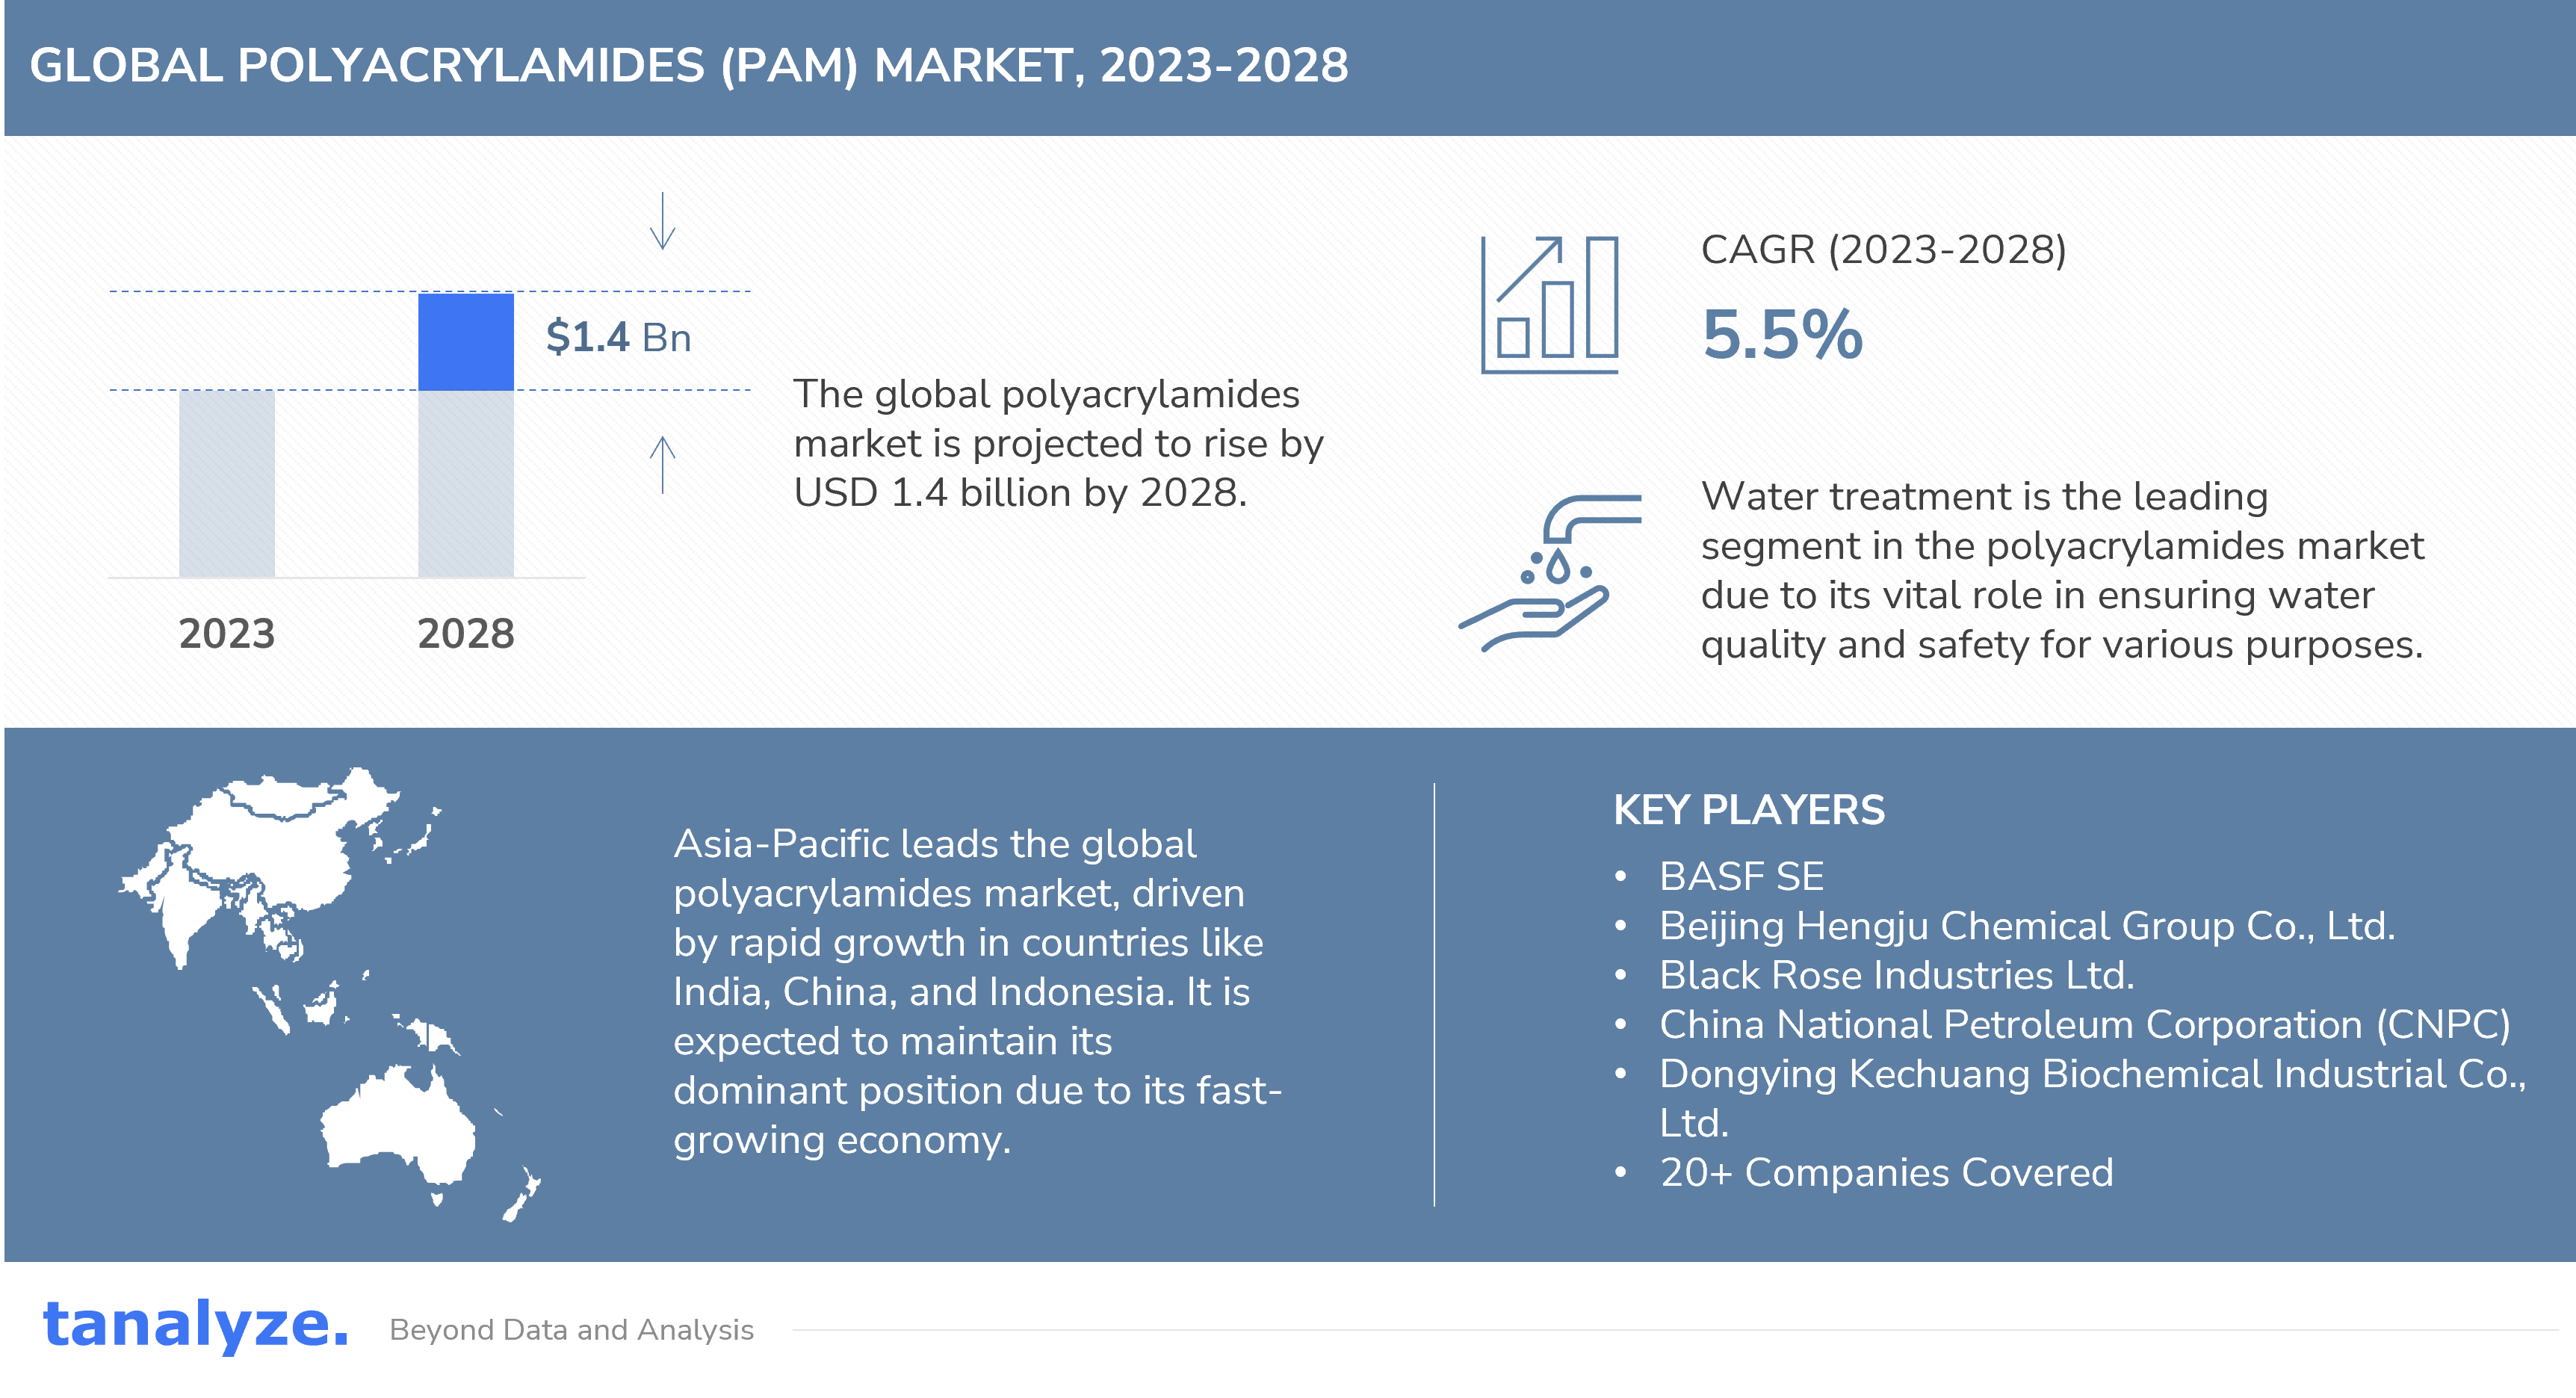 Global Polyacrylamides PAM Market 2023 2028